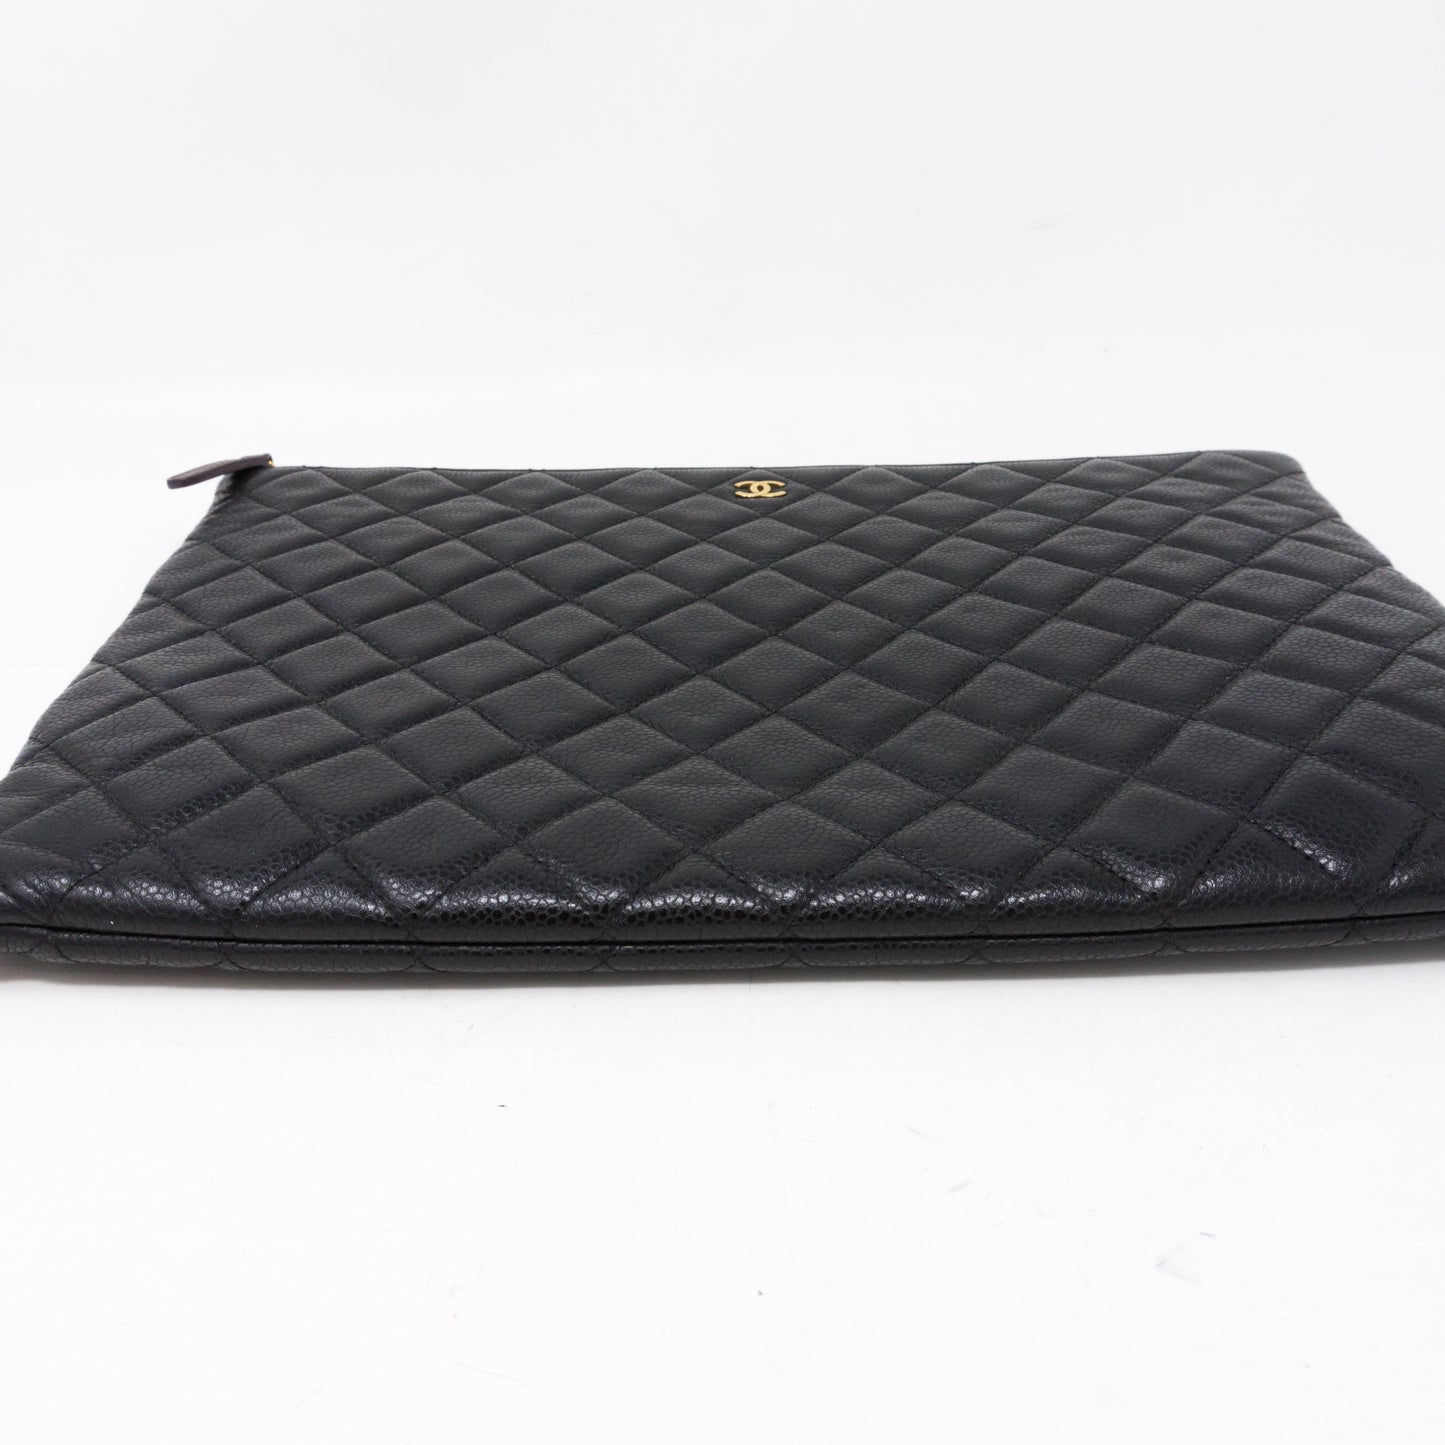 O-Case Large Black Caviar Leather